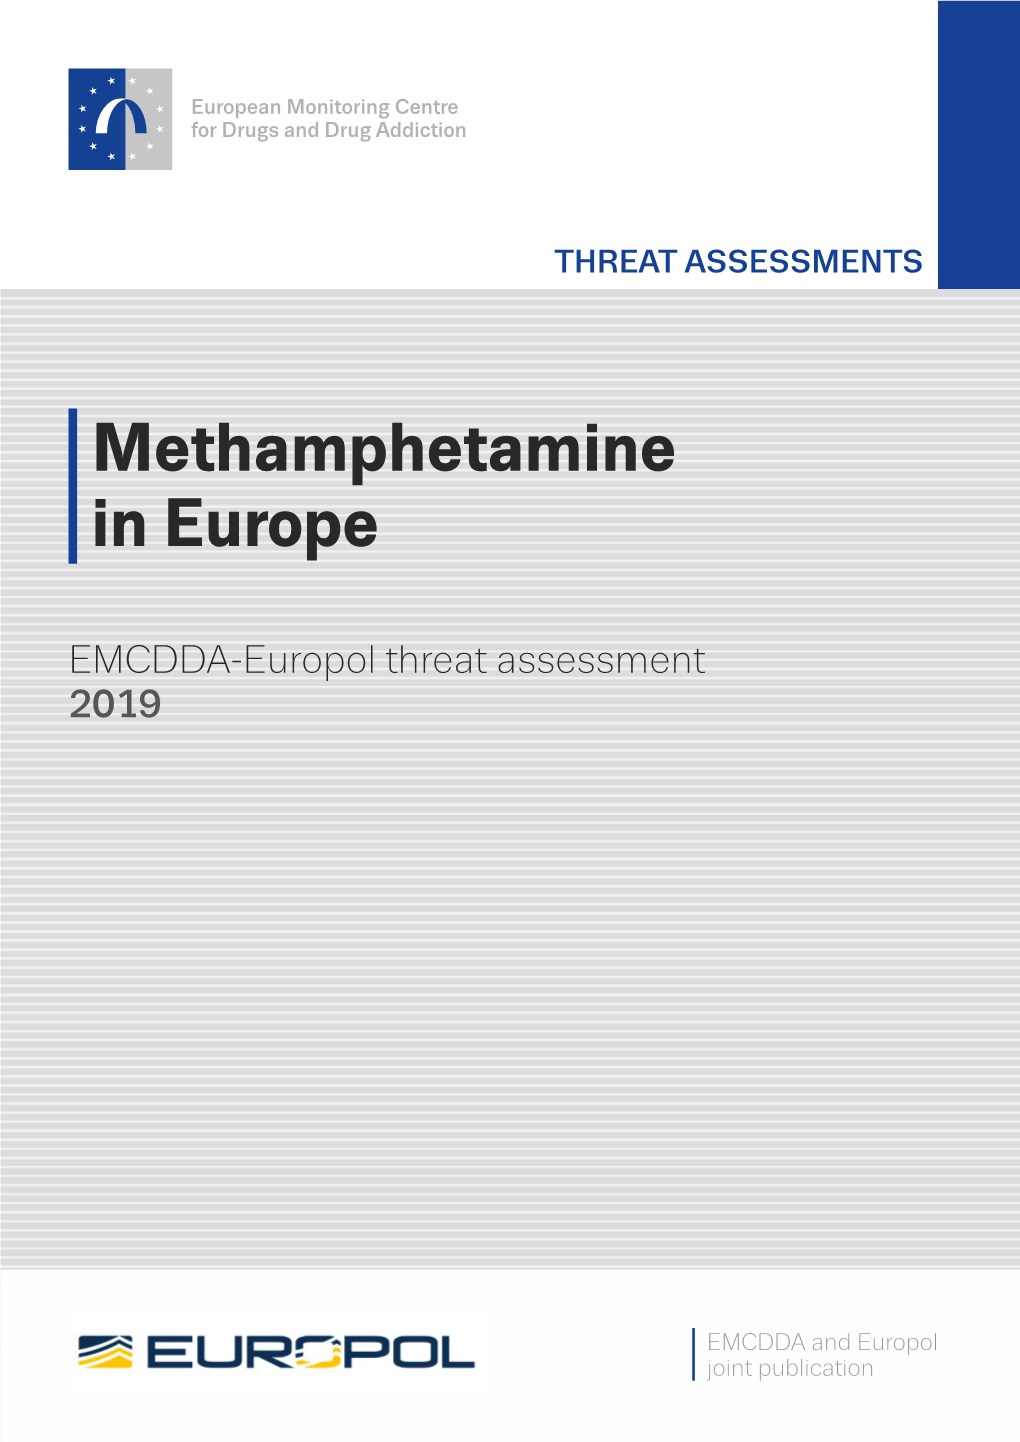 Methamphetamine in Europe